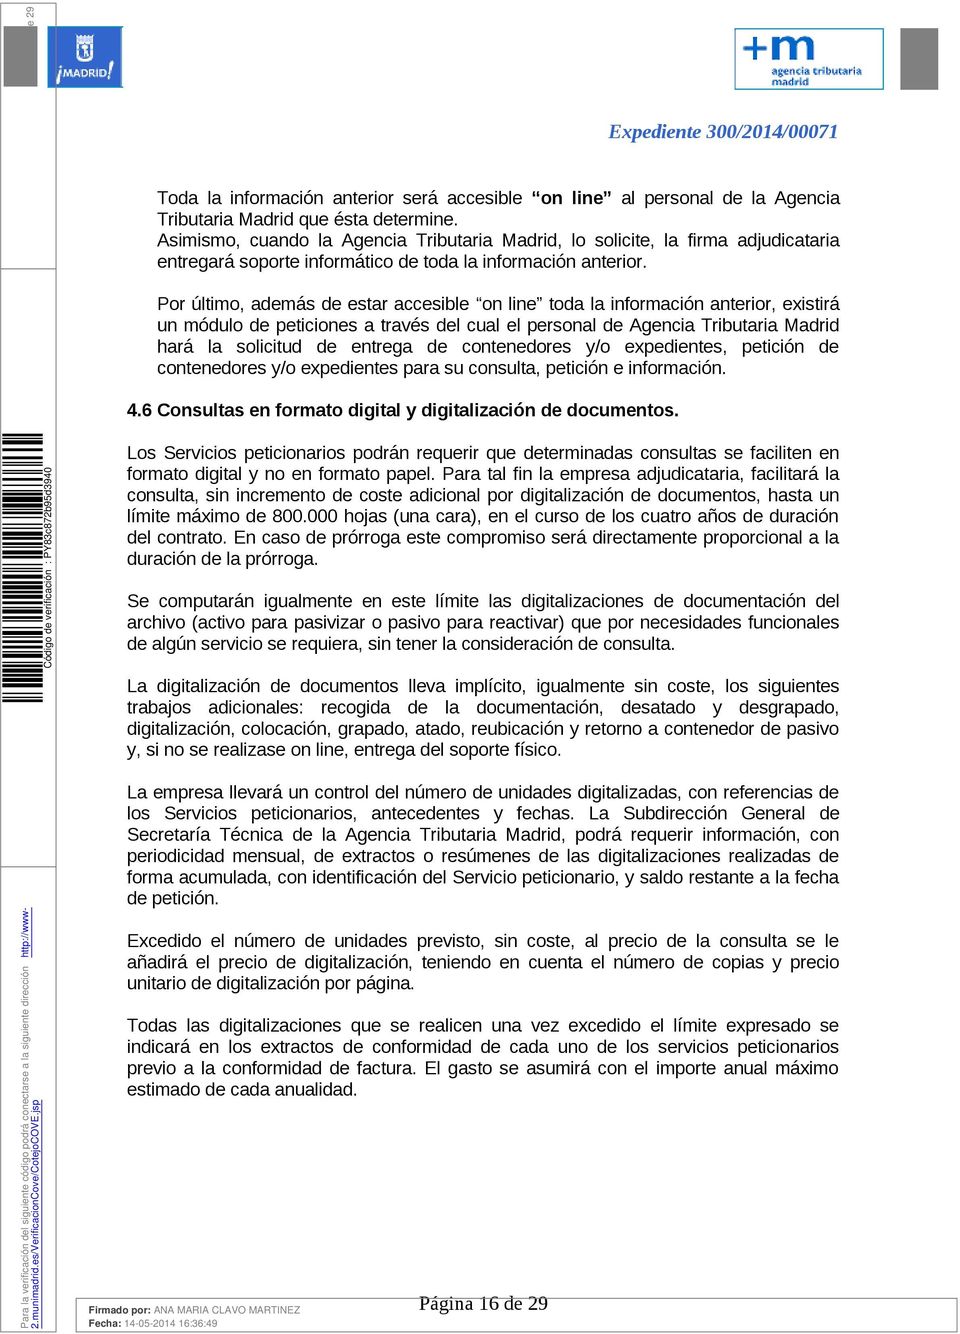 Por último, además de estar accesible on line toda la información anterior, existirá un módulo de peticiones a través del cual el personal de Agencia Tributaria Madrid hará la solicitud de entrega de